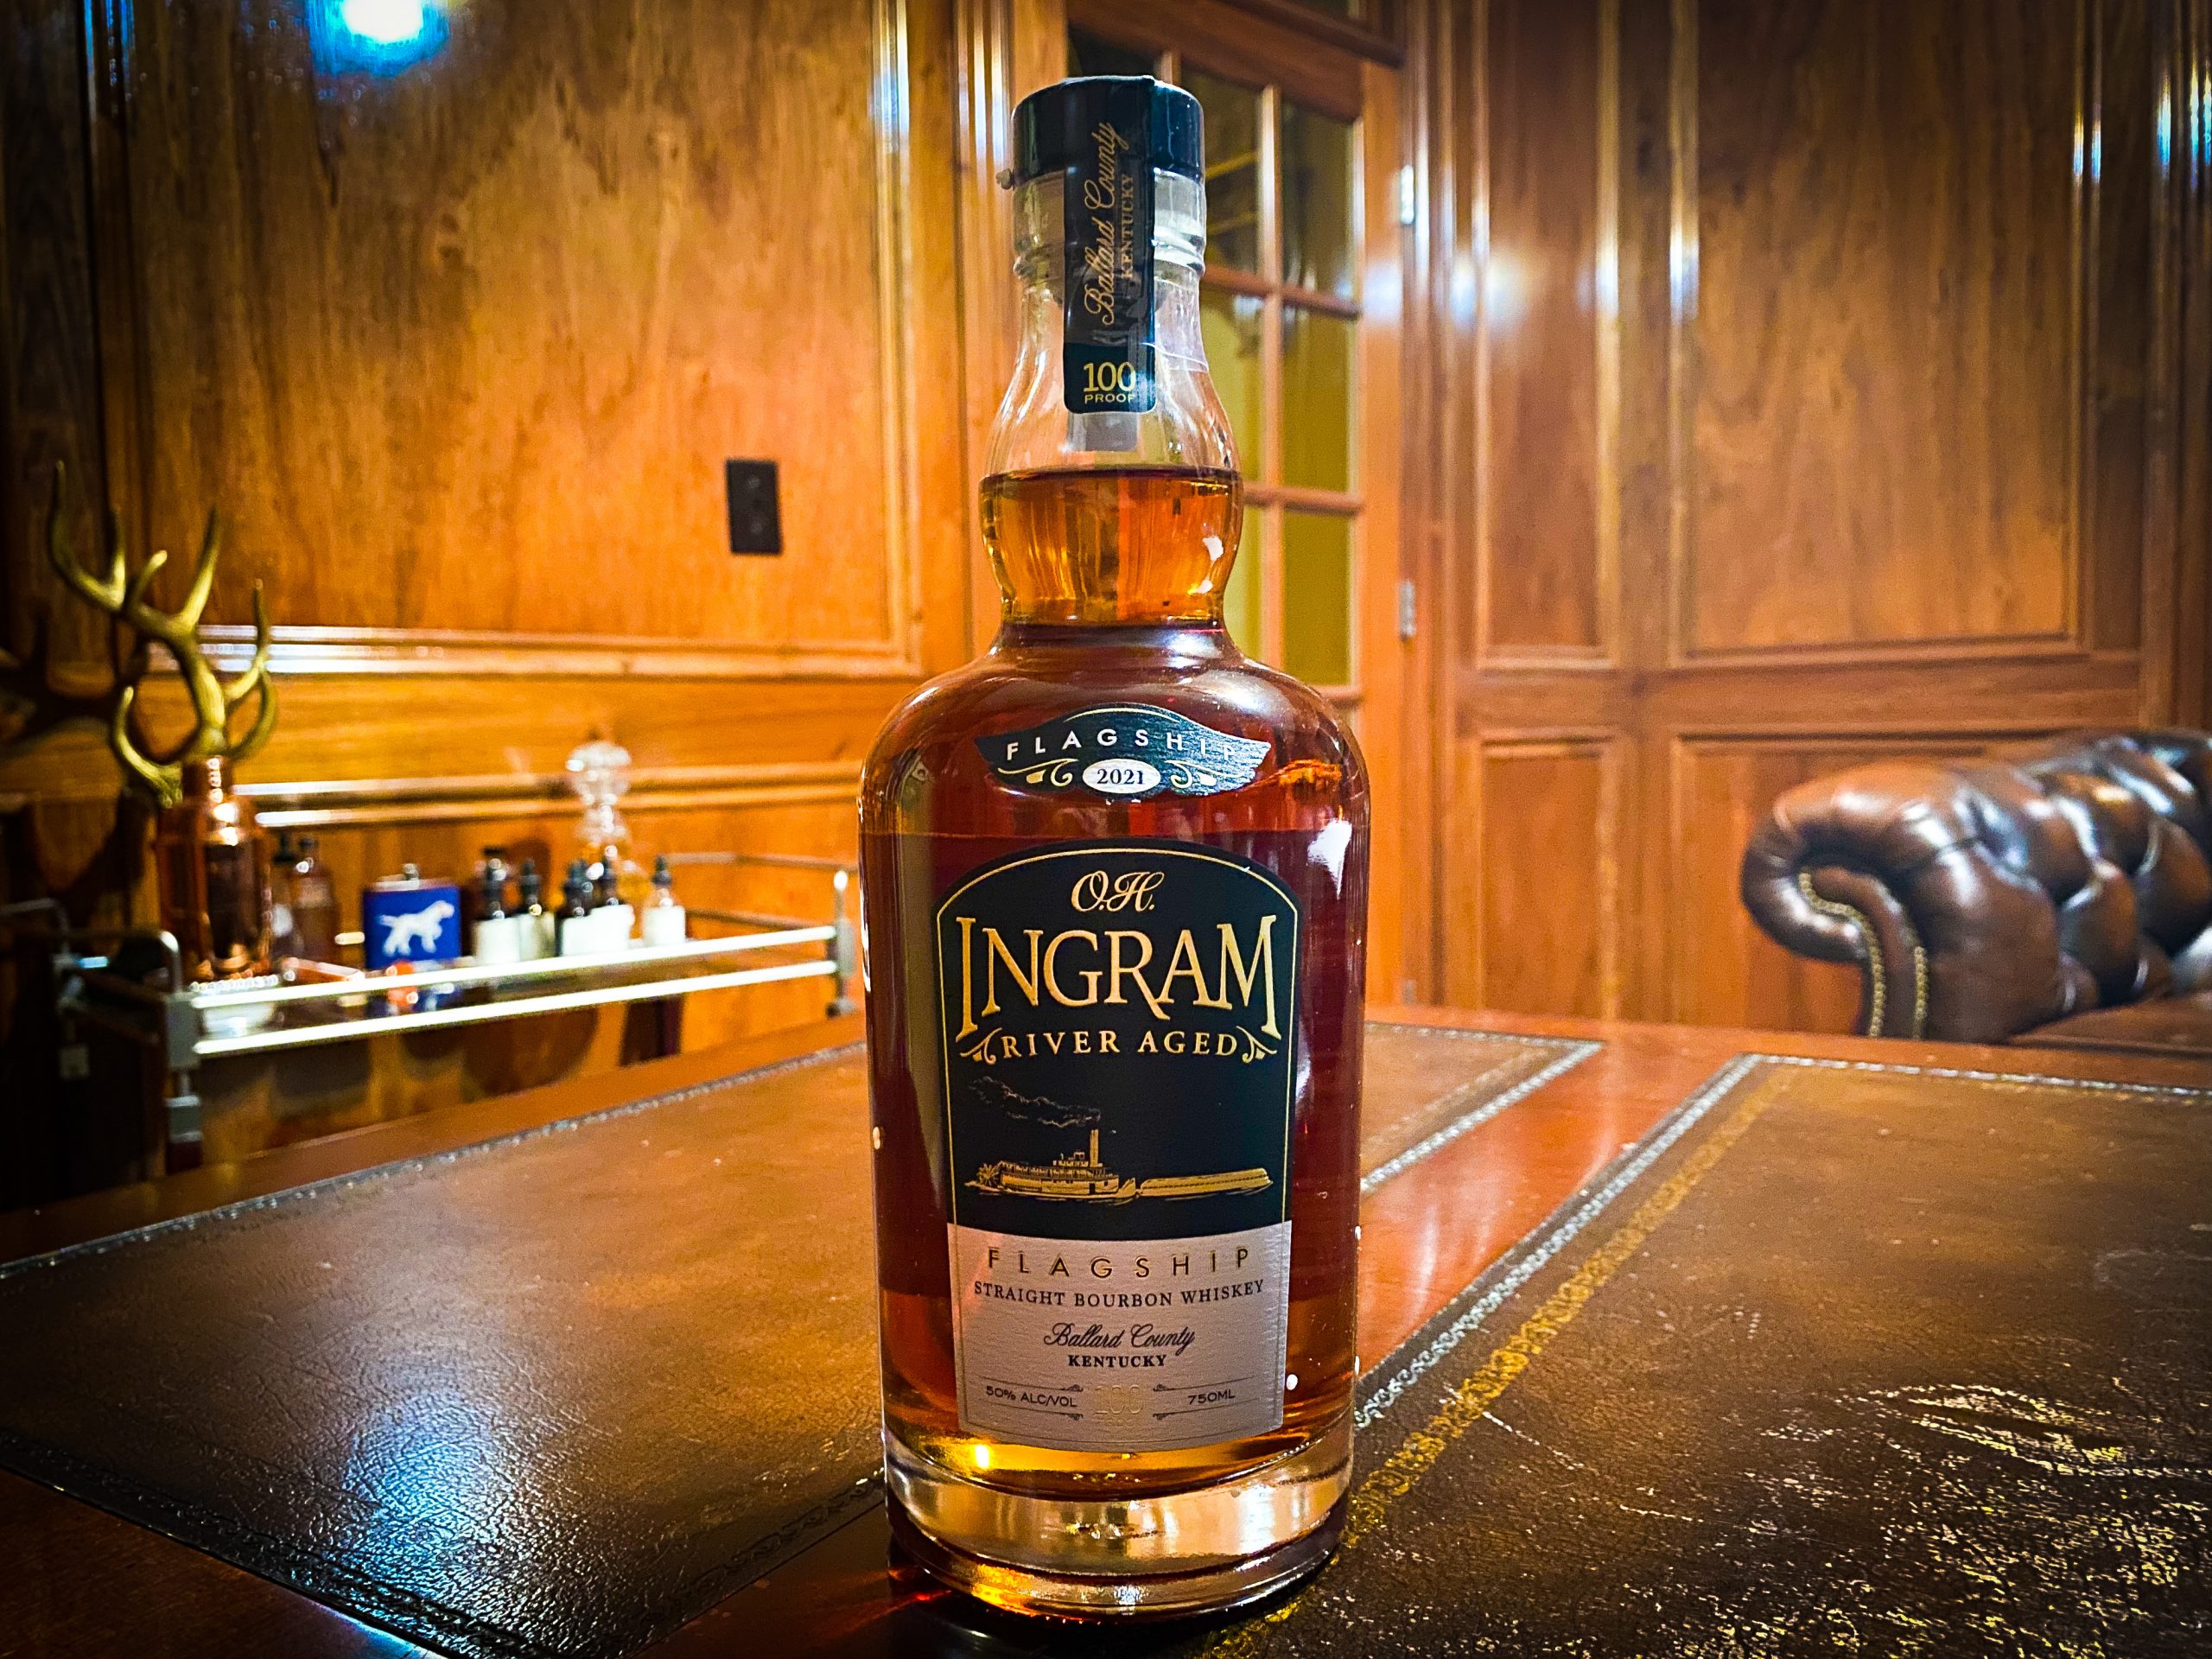 O.H. Ingram Whiskey - Flagship